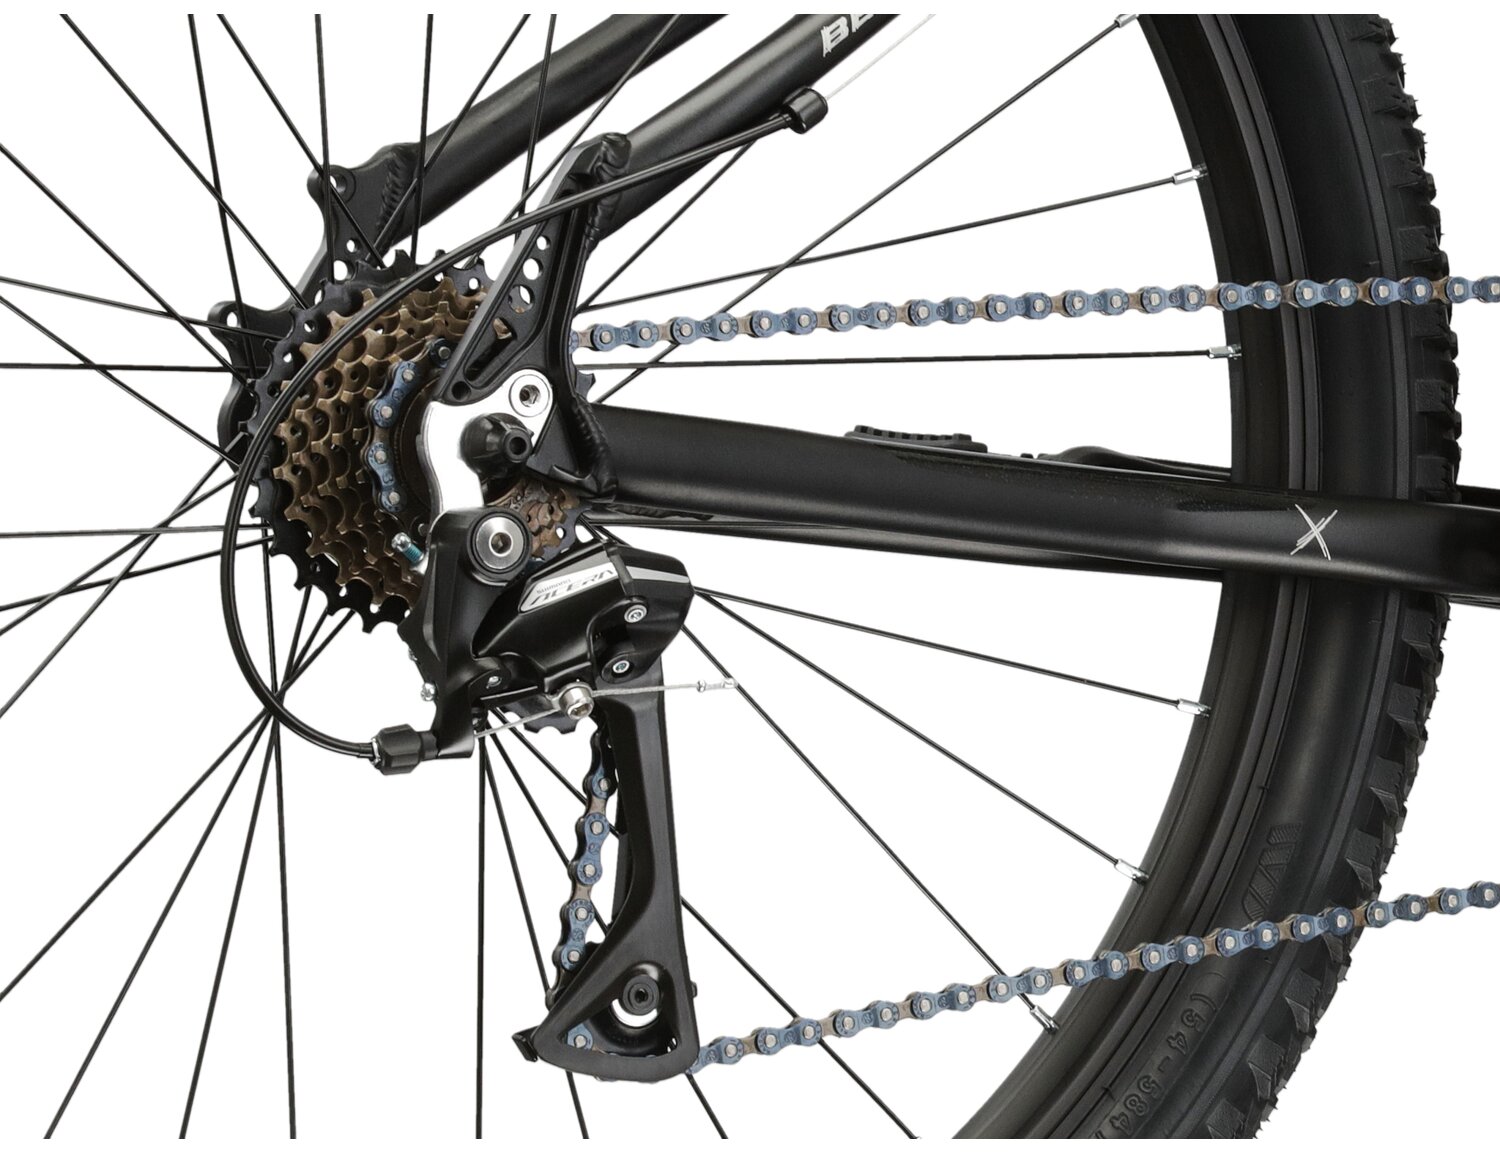  Tylna siedmiobiegowa przerzutka Shimano Acera M3020 oraz hamulce v-brake w rowerze juniorskim KROSS Berg JR 2.0 